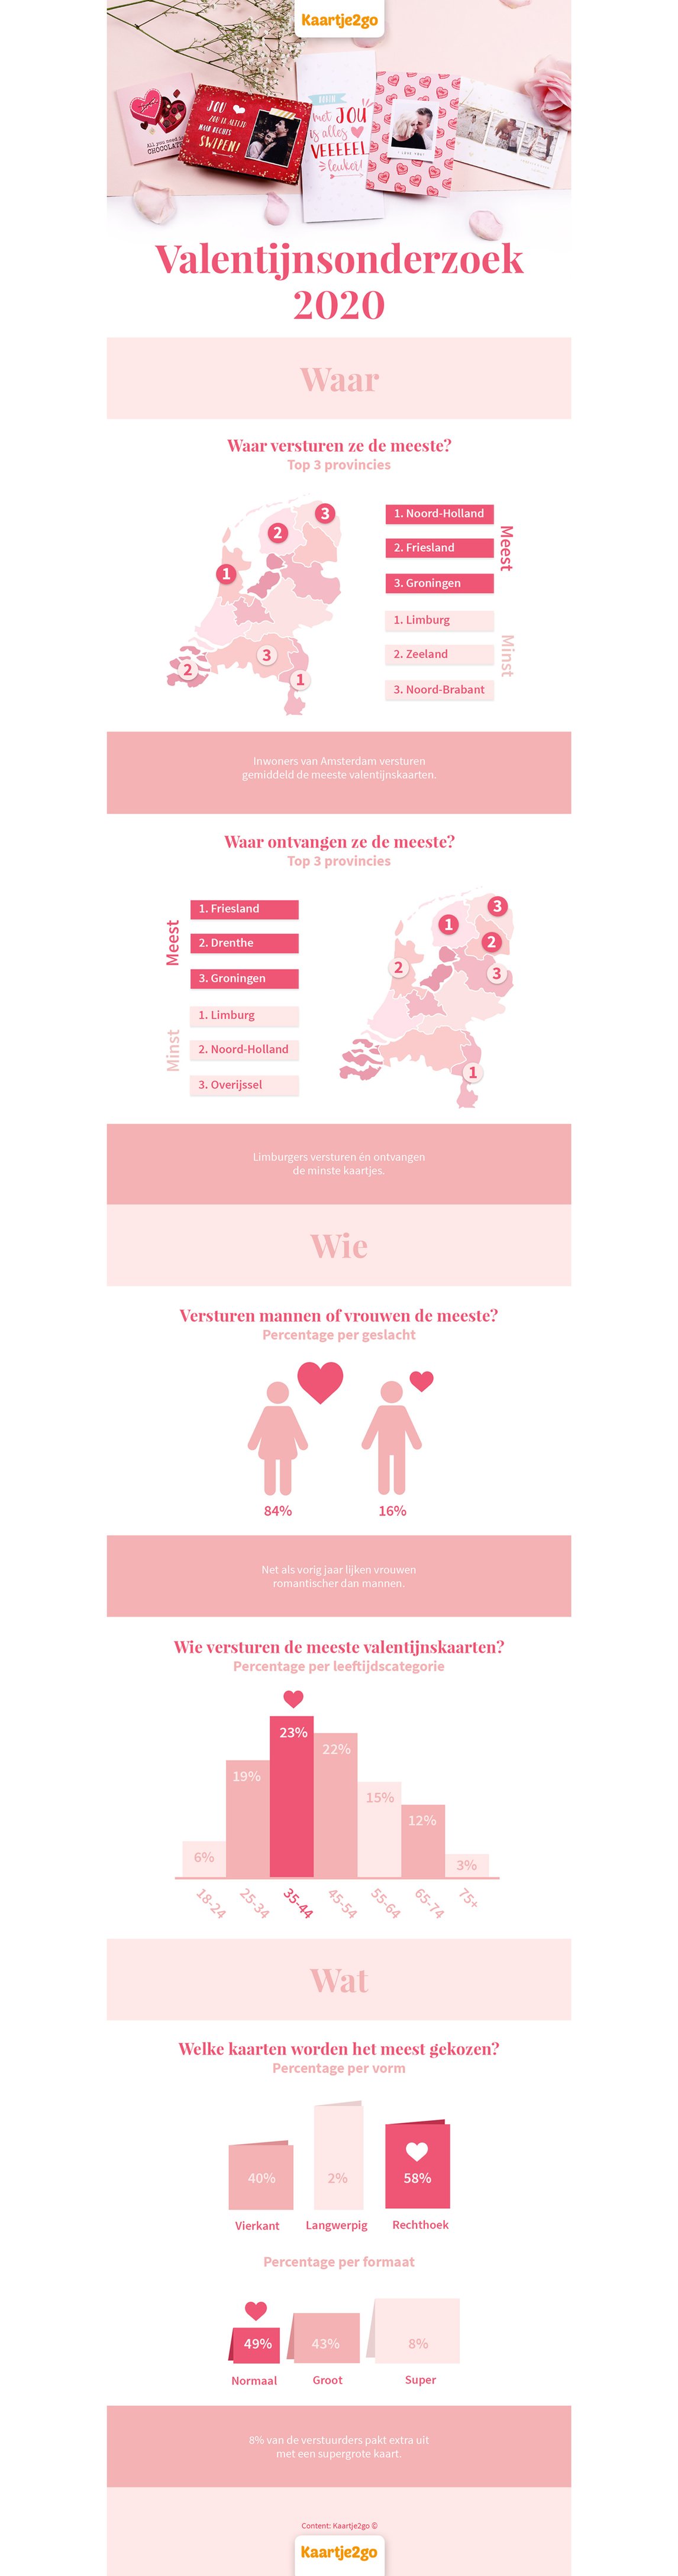 Valentijnskaartenonderzoek 2020 infographic